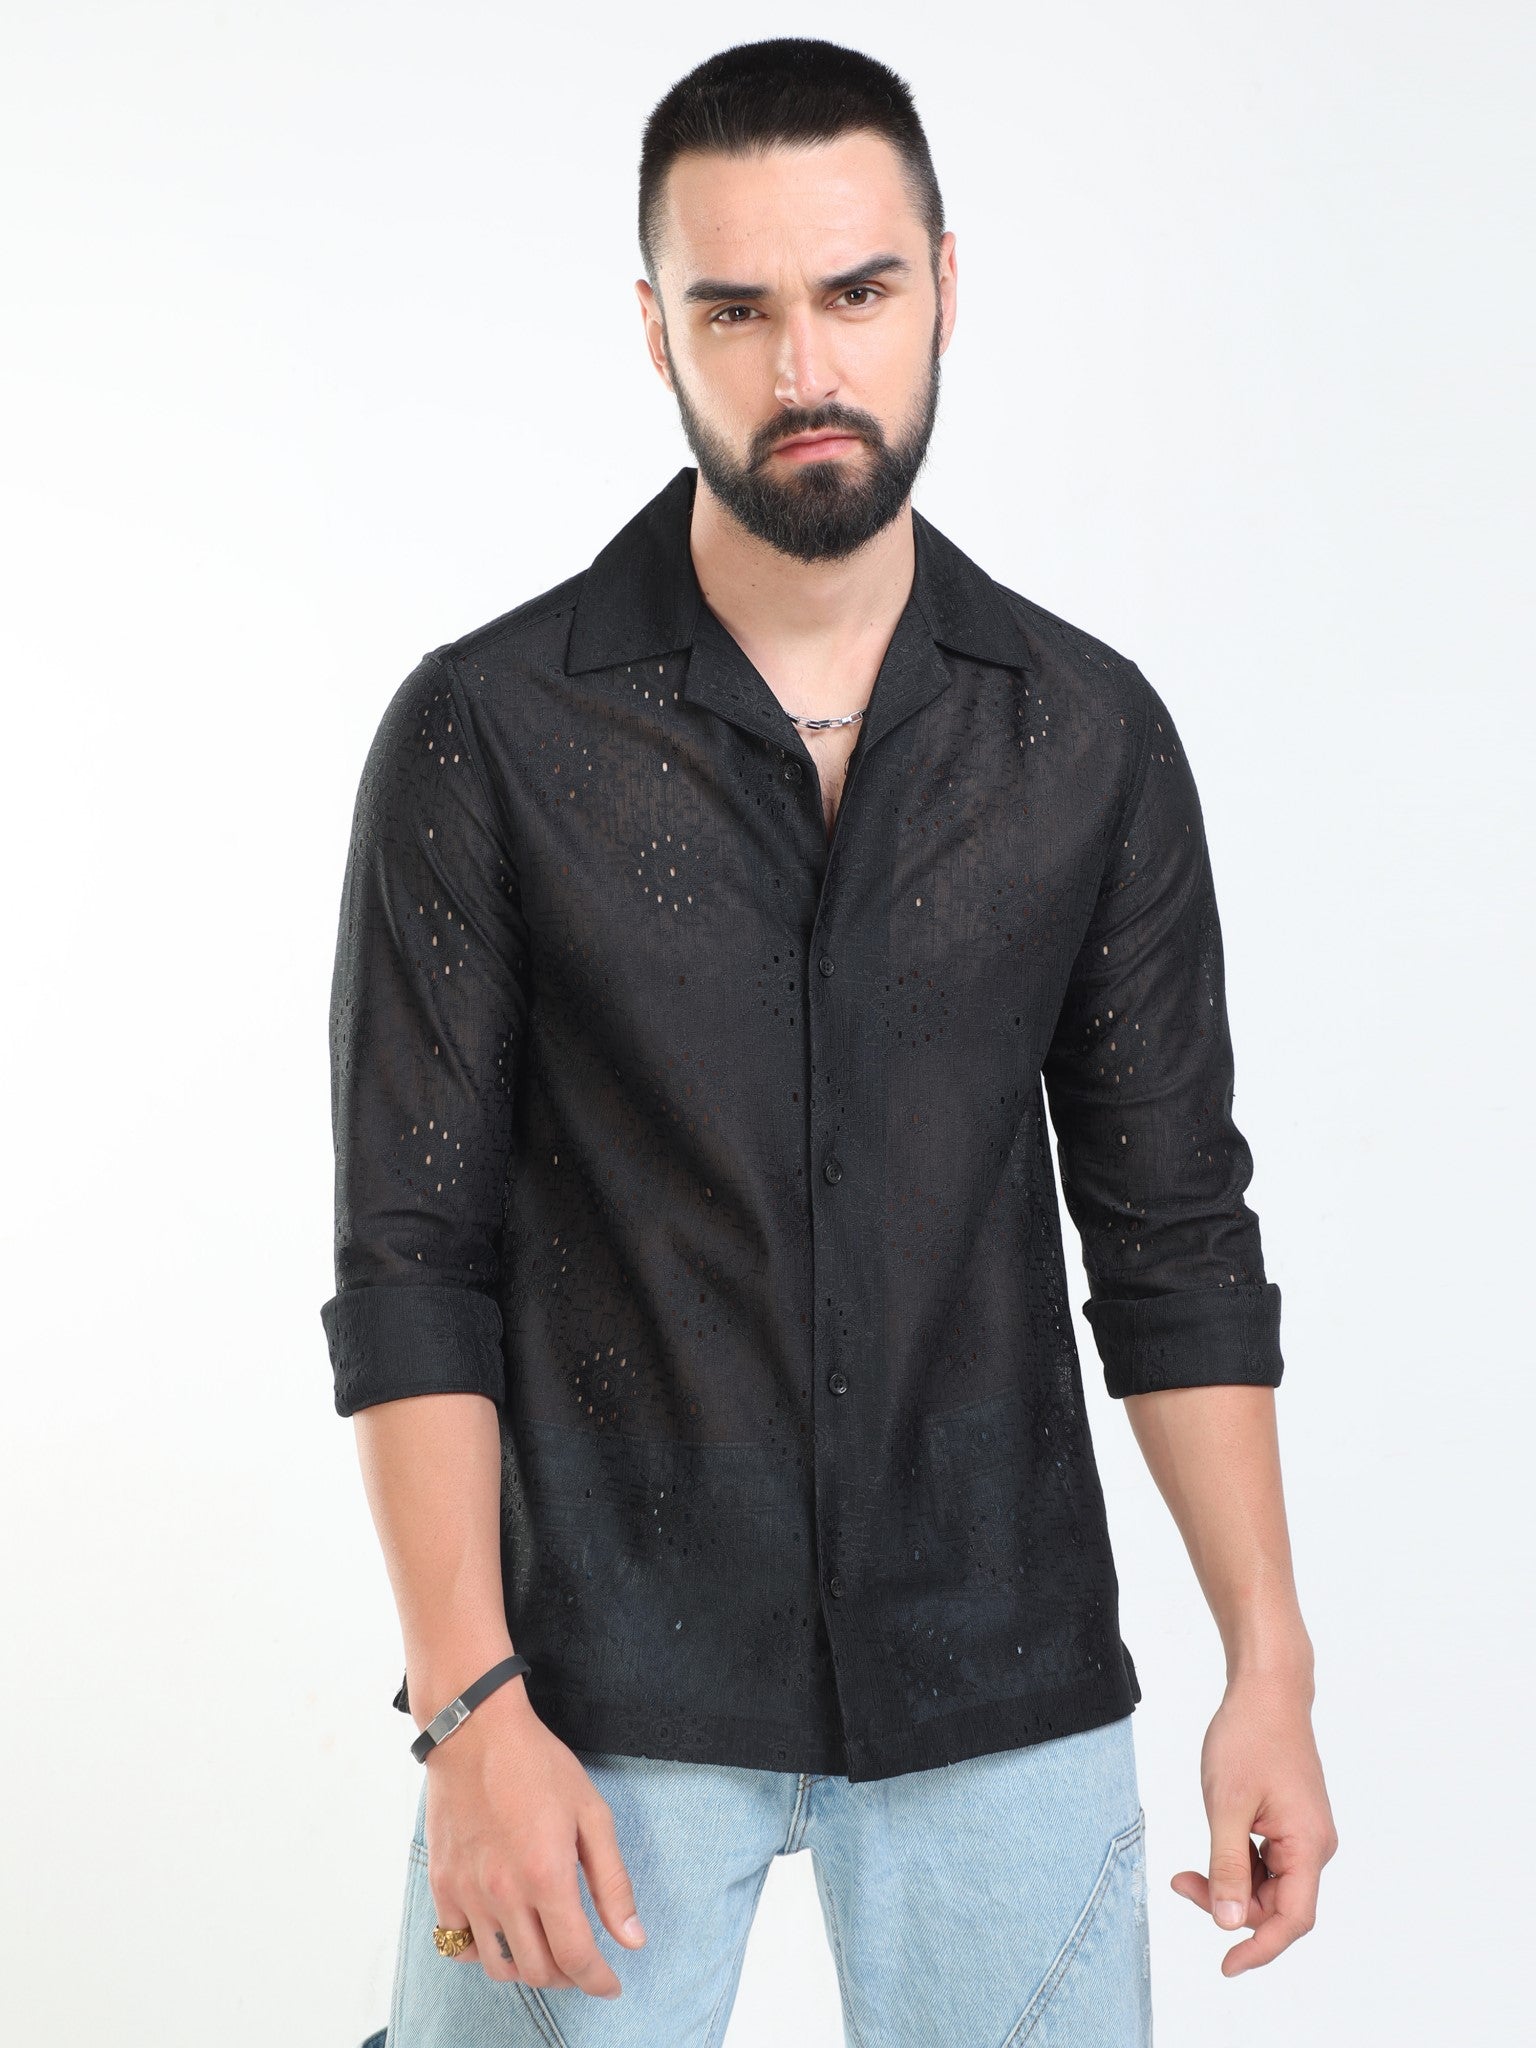 Flower Crochet Black Shirt for Men